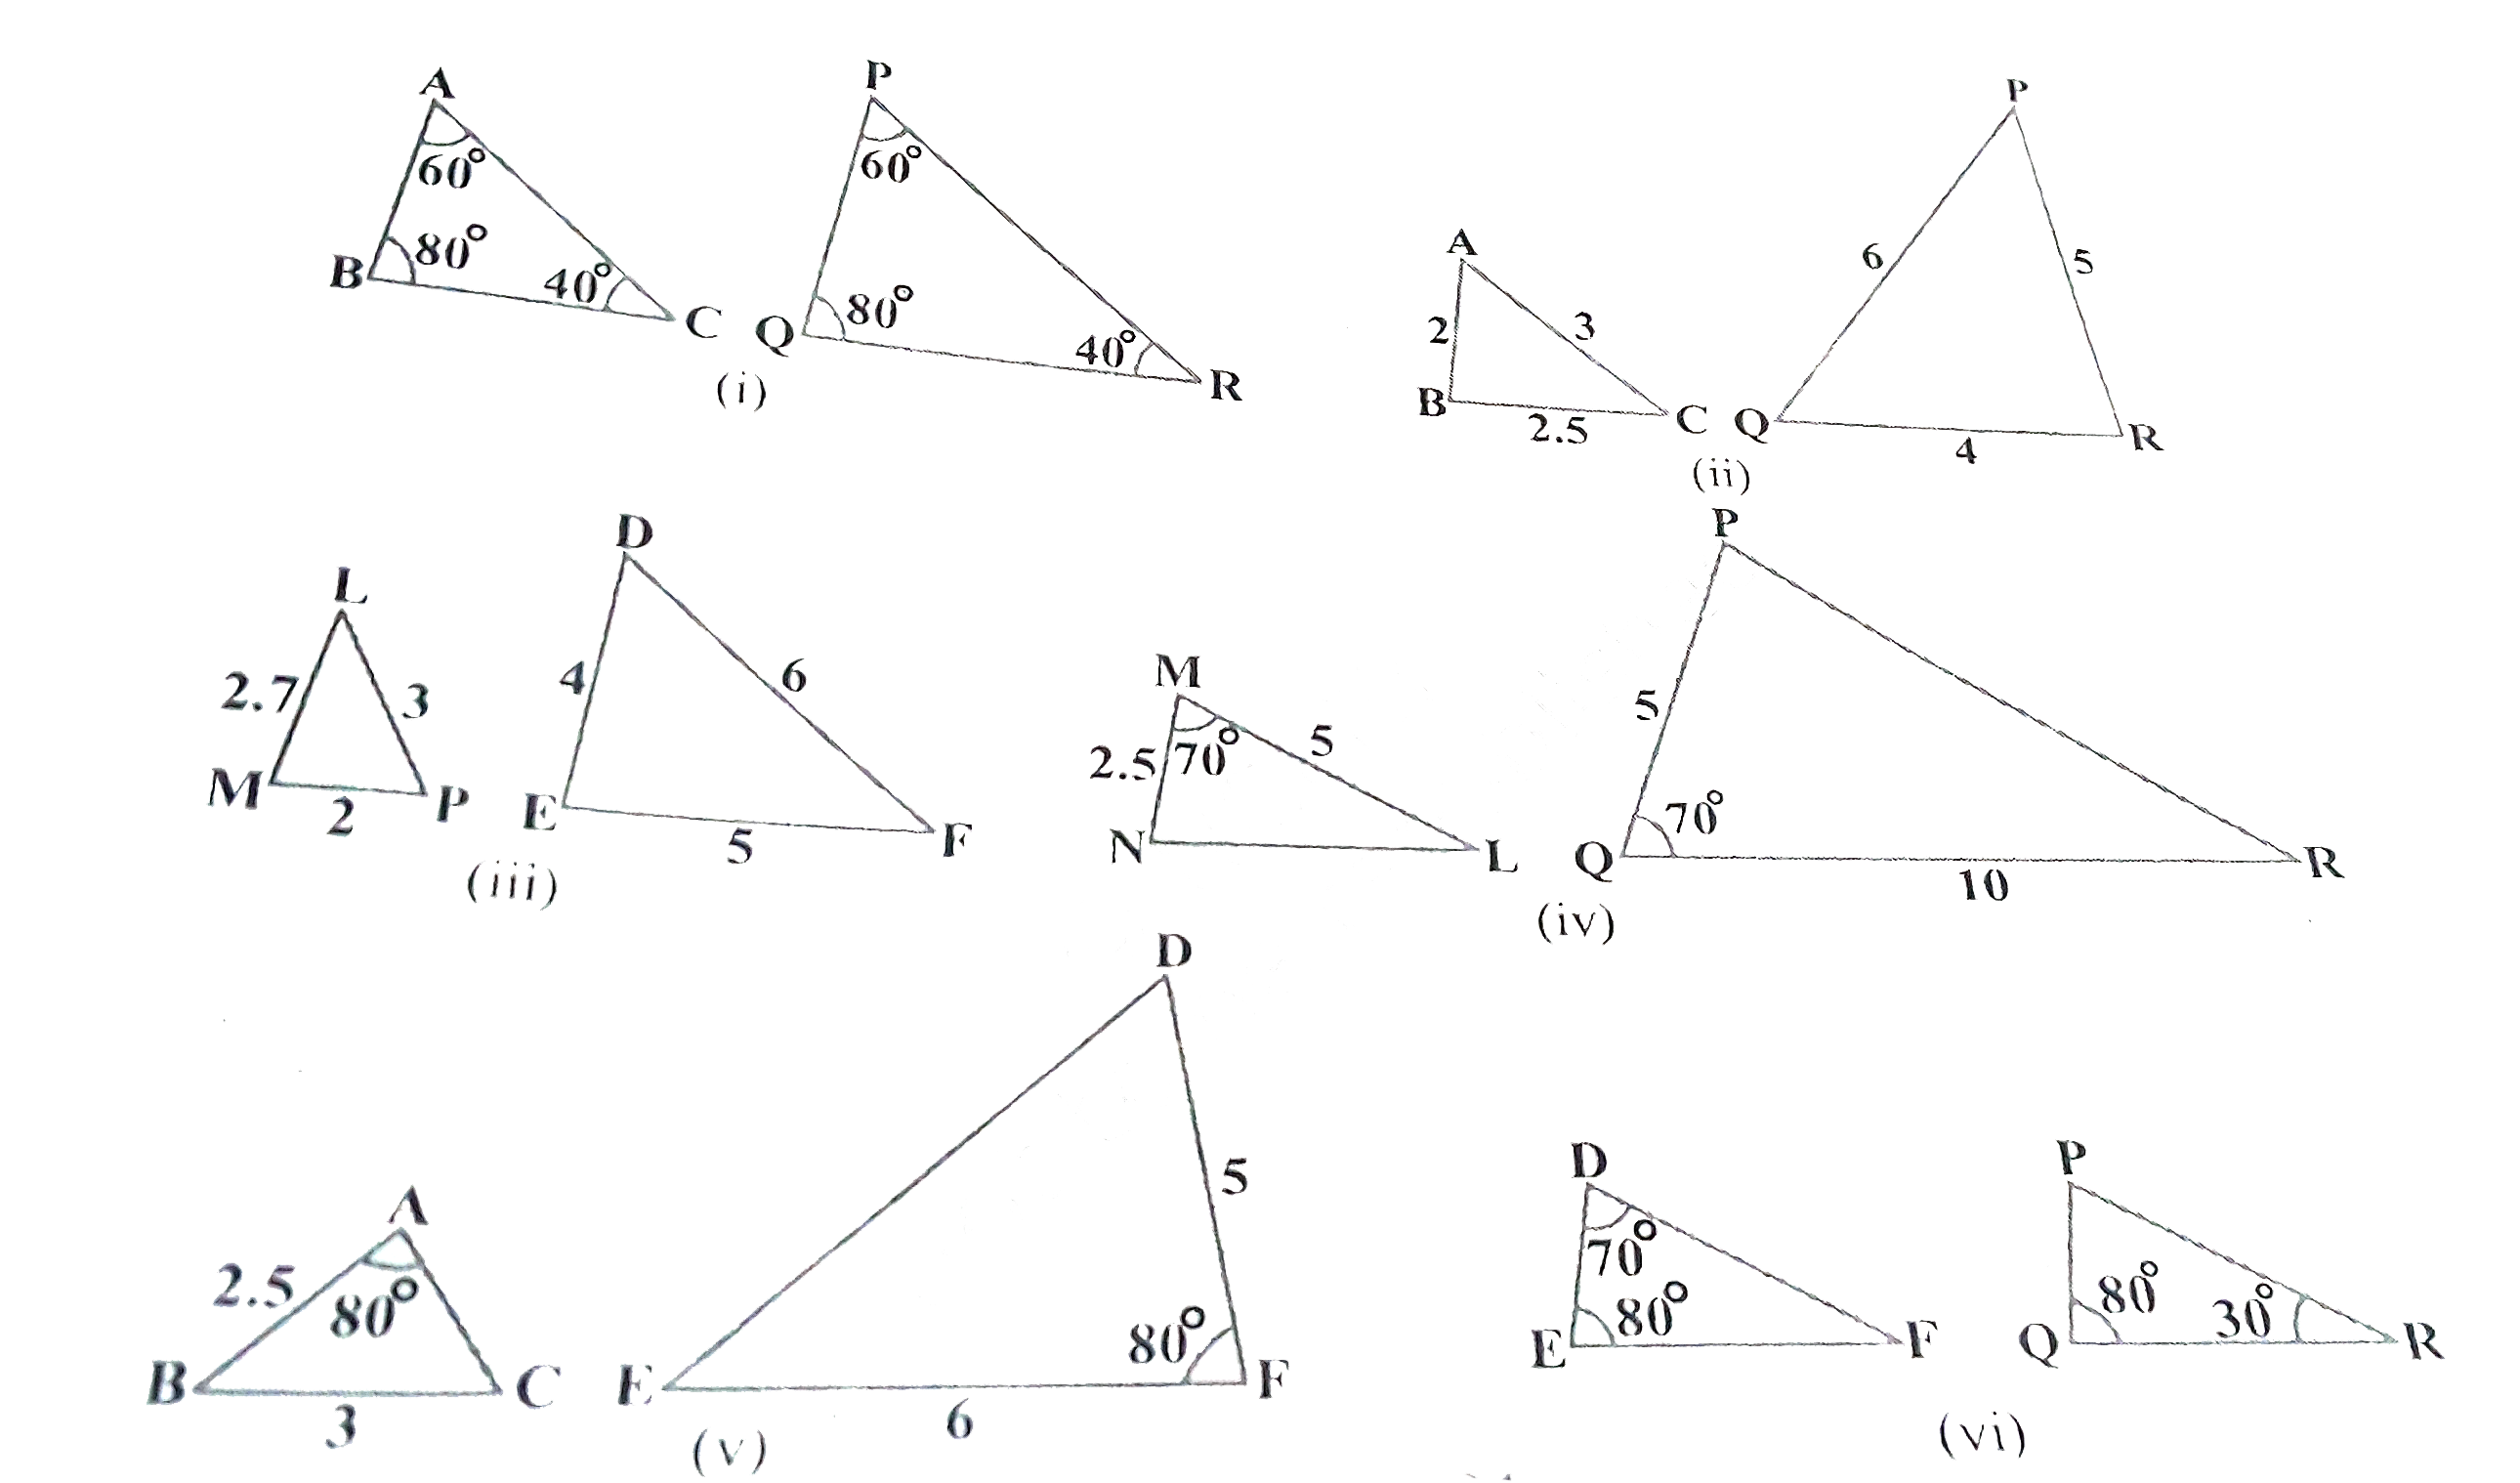 बताइए कि आकृति  में दिए त्रिभुजों के युग्मो में से कौन-कौन से युग्म समरूप है । उस समरूपता कसौटी को लिखिए जिसका प्रयोग आपने उत्तर देने में किया है तथा साथ ही समरूप त्रिभुजों को सांकेतिक रूप में व्यक्त कीजिए ।